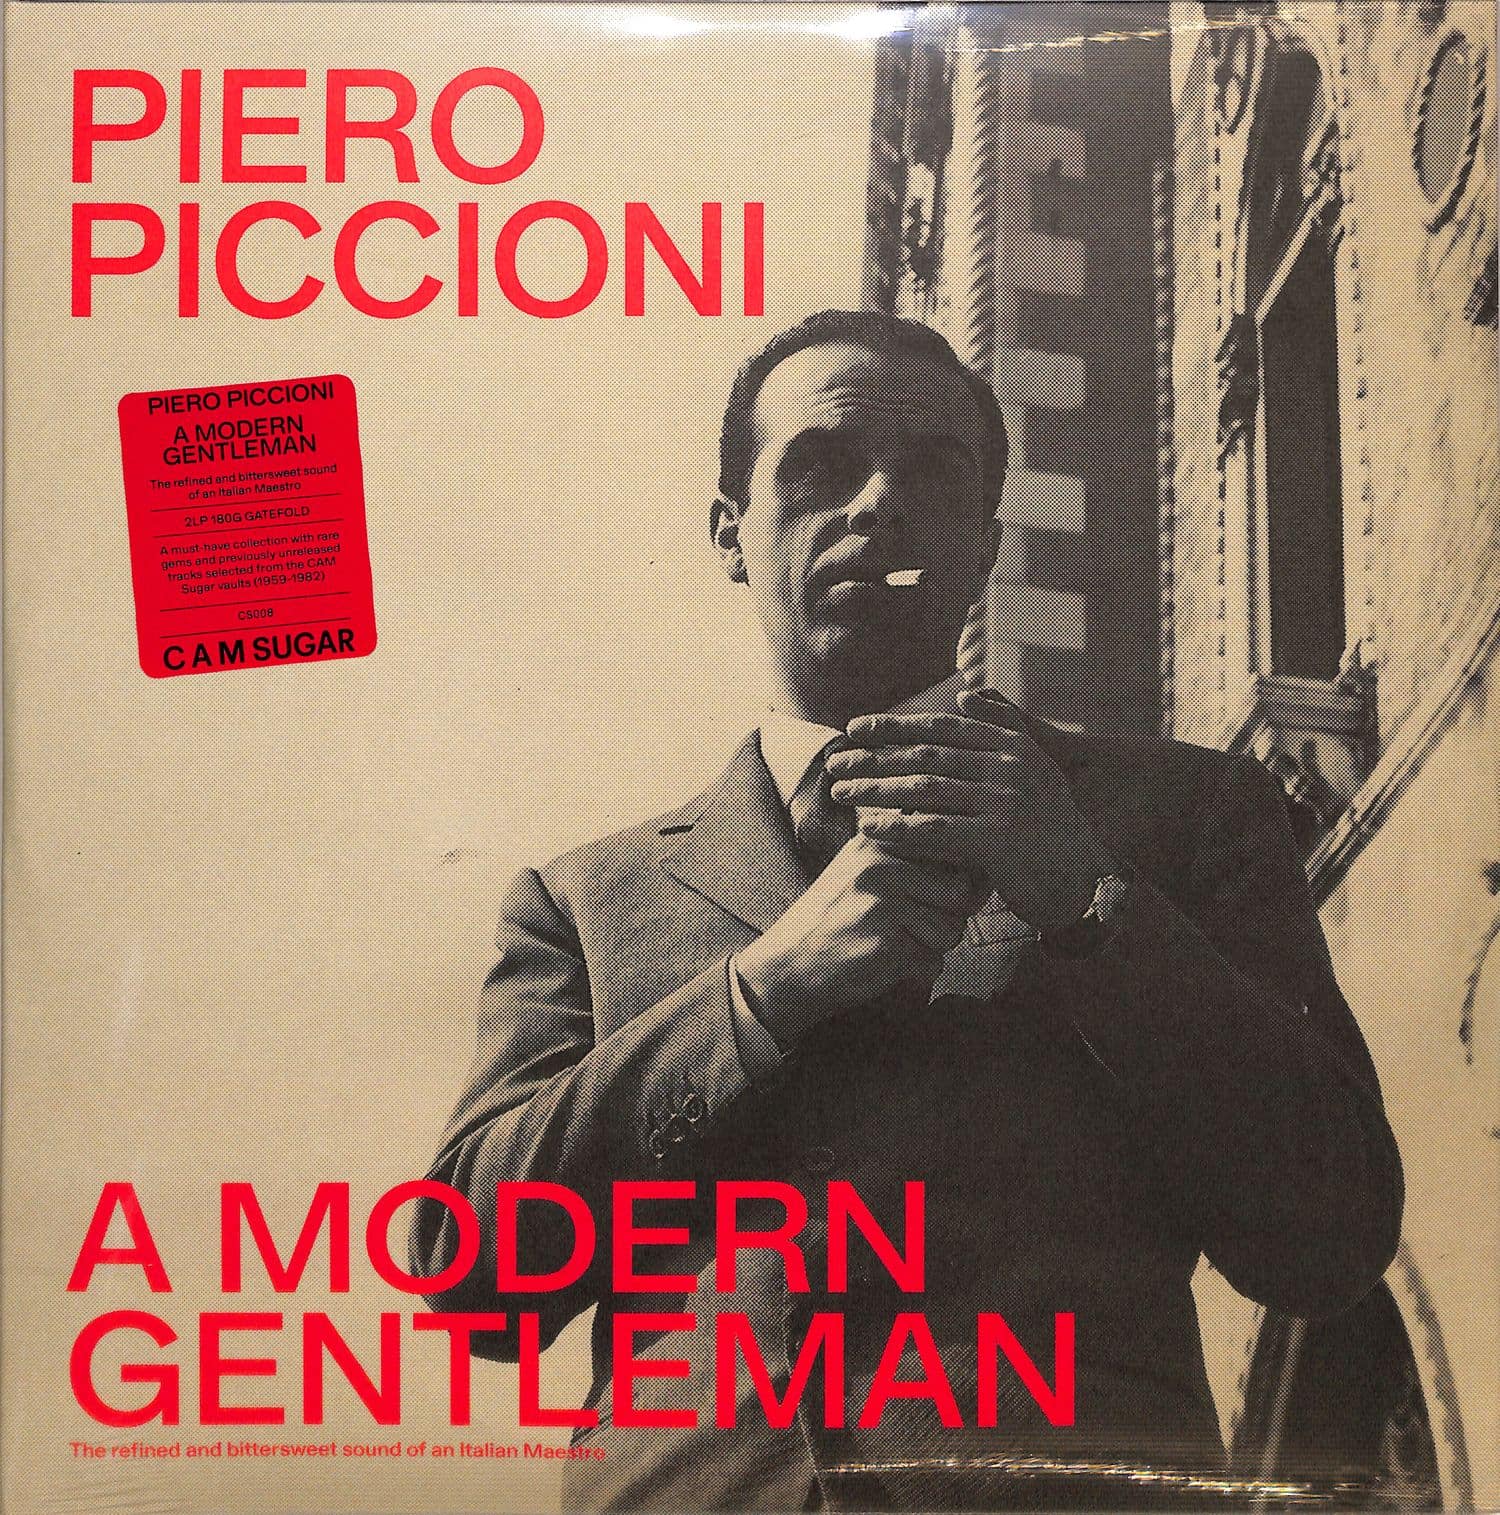 Piero Piccioni - A MODERN GENTLEMAN 